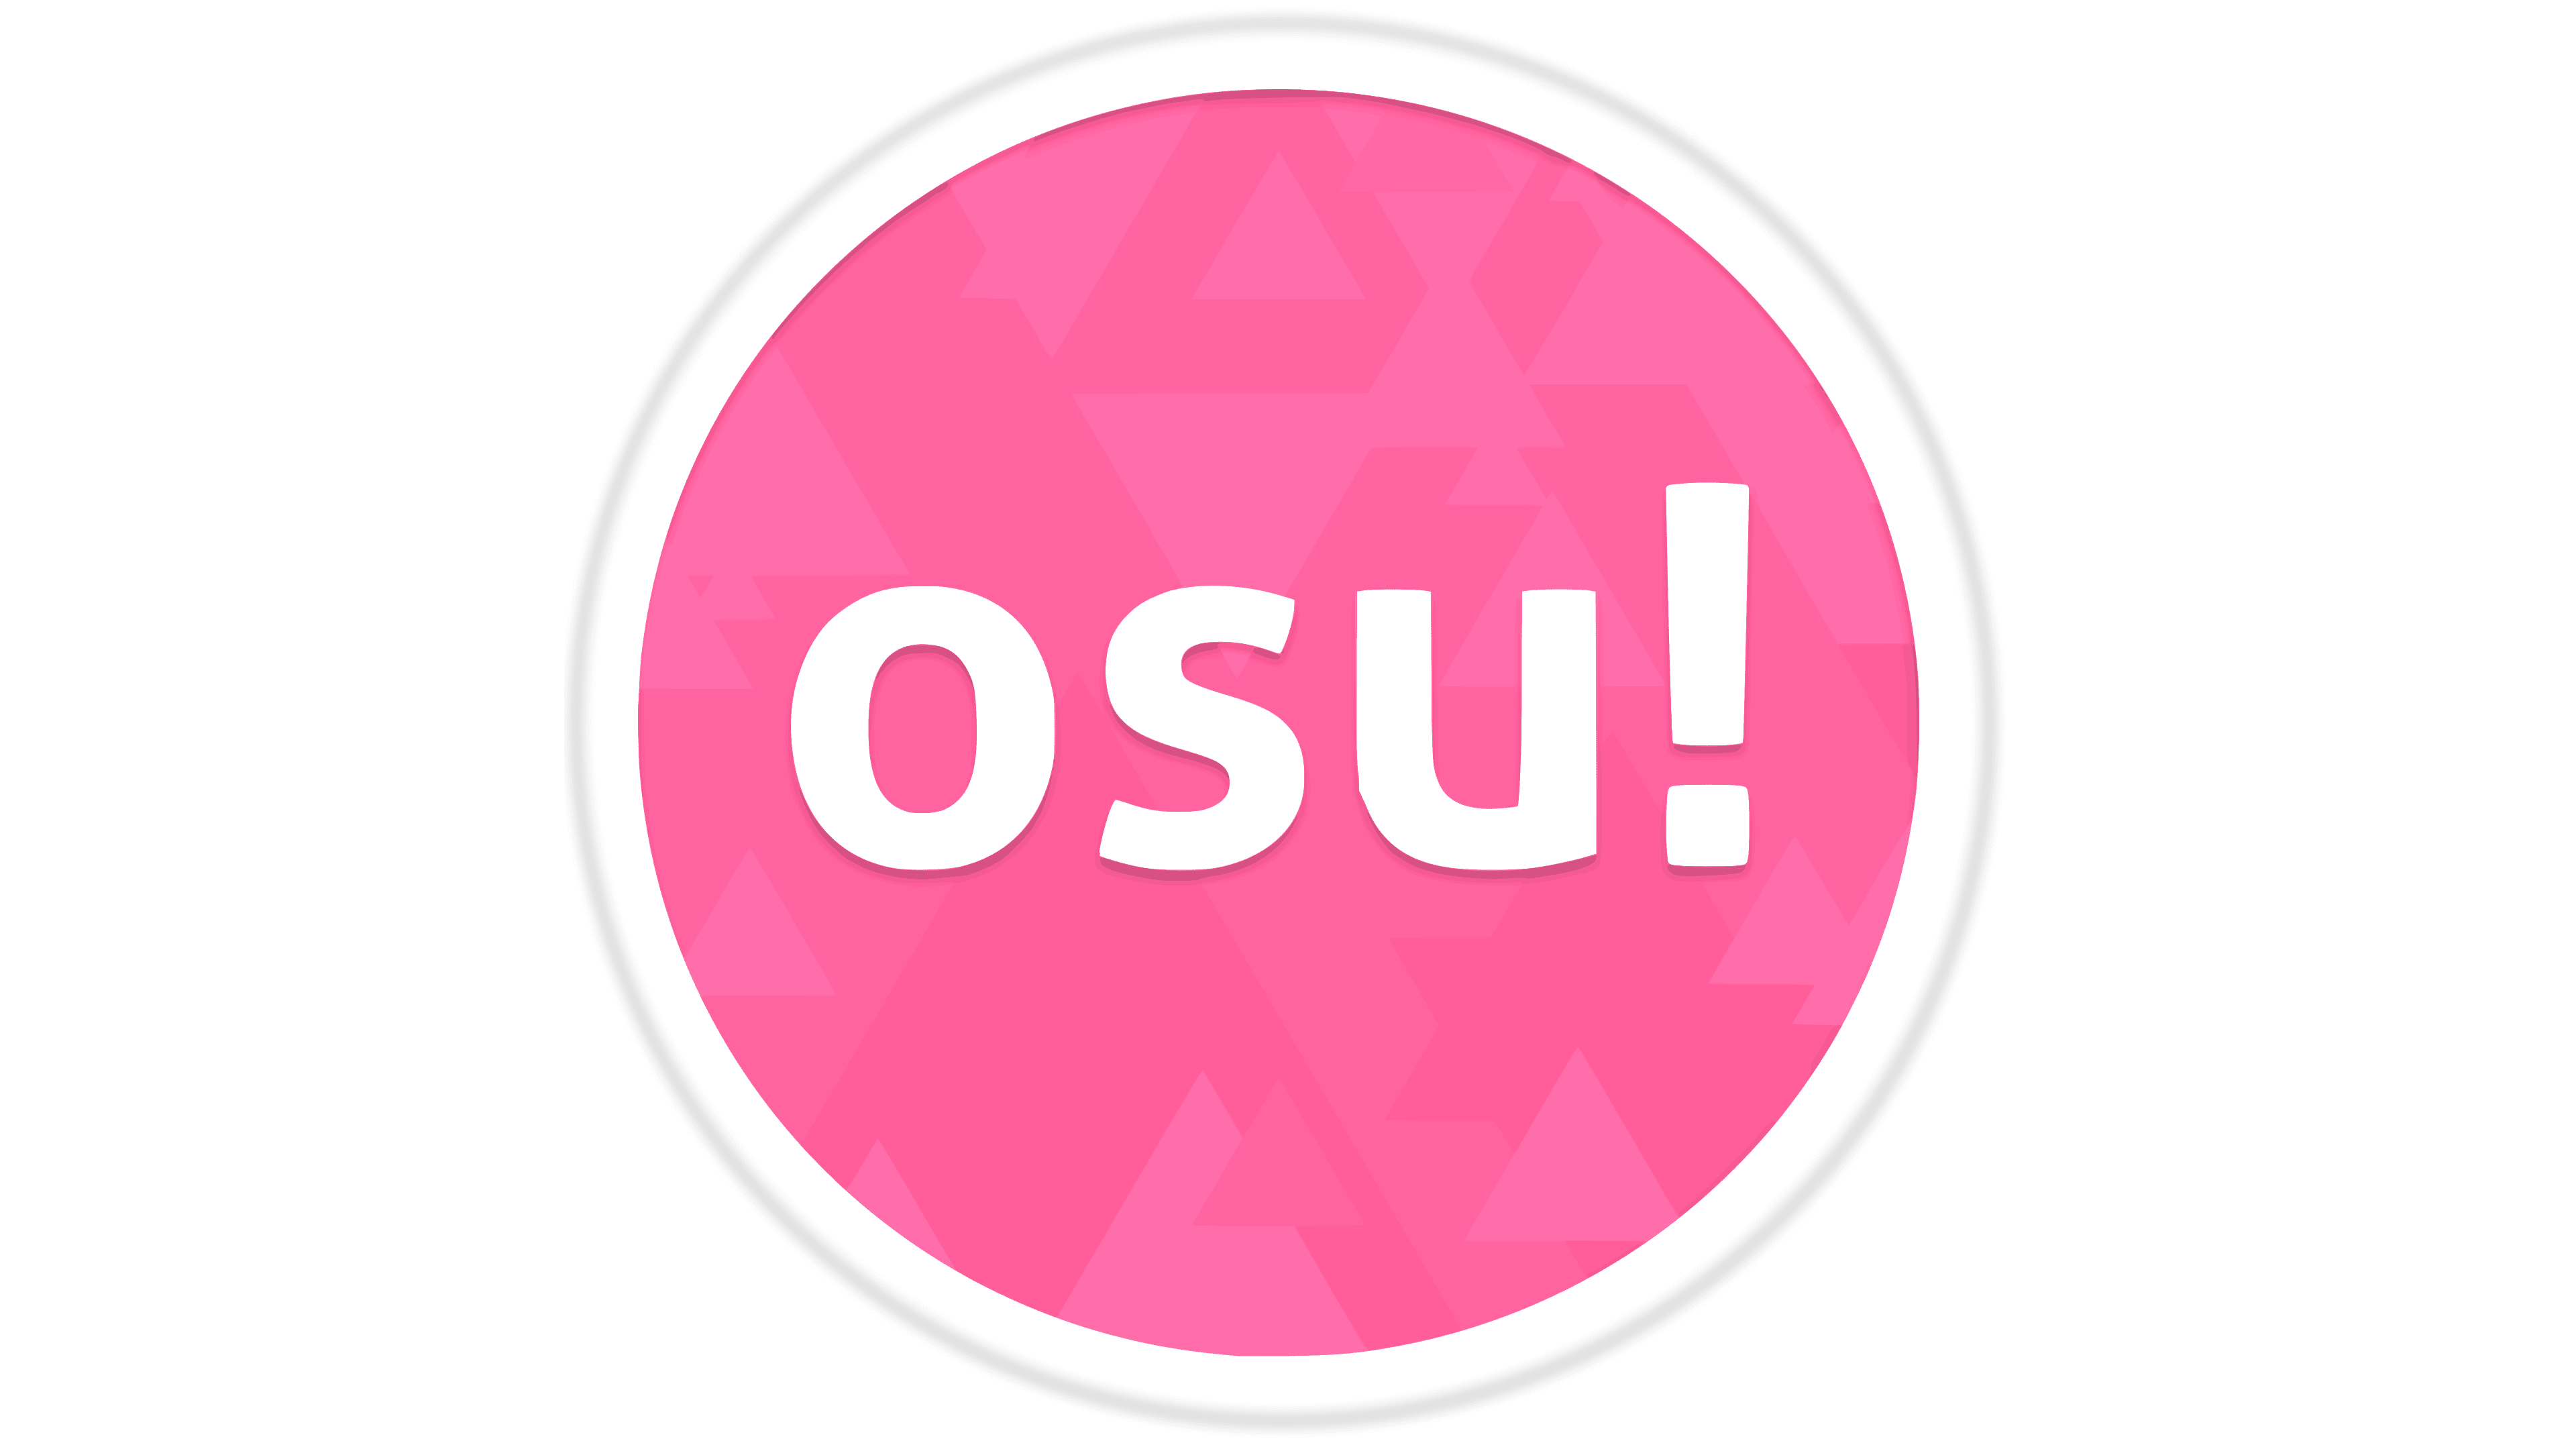 Osu! Logo histoire, signification de l'emblème